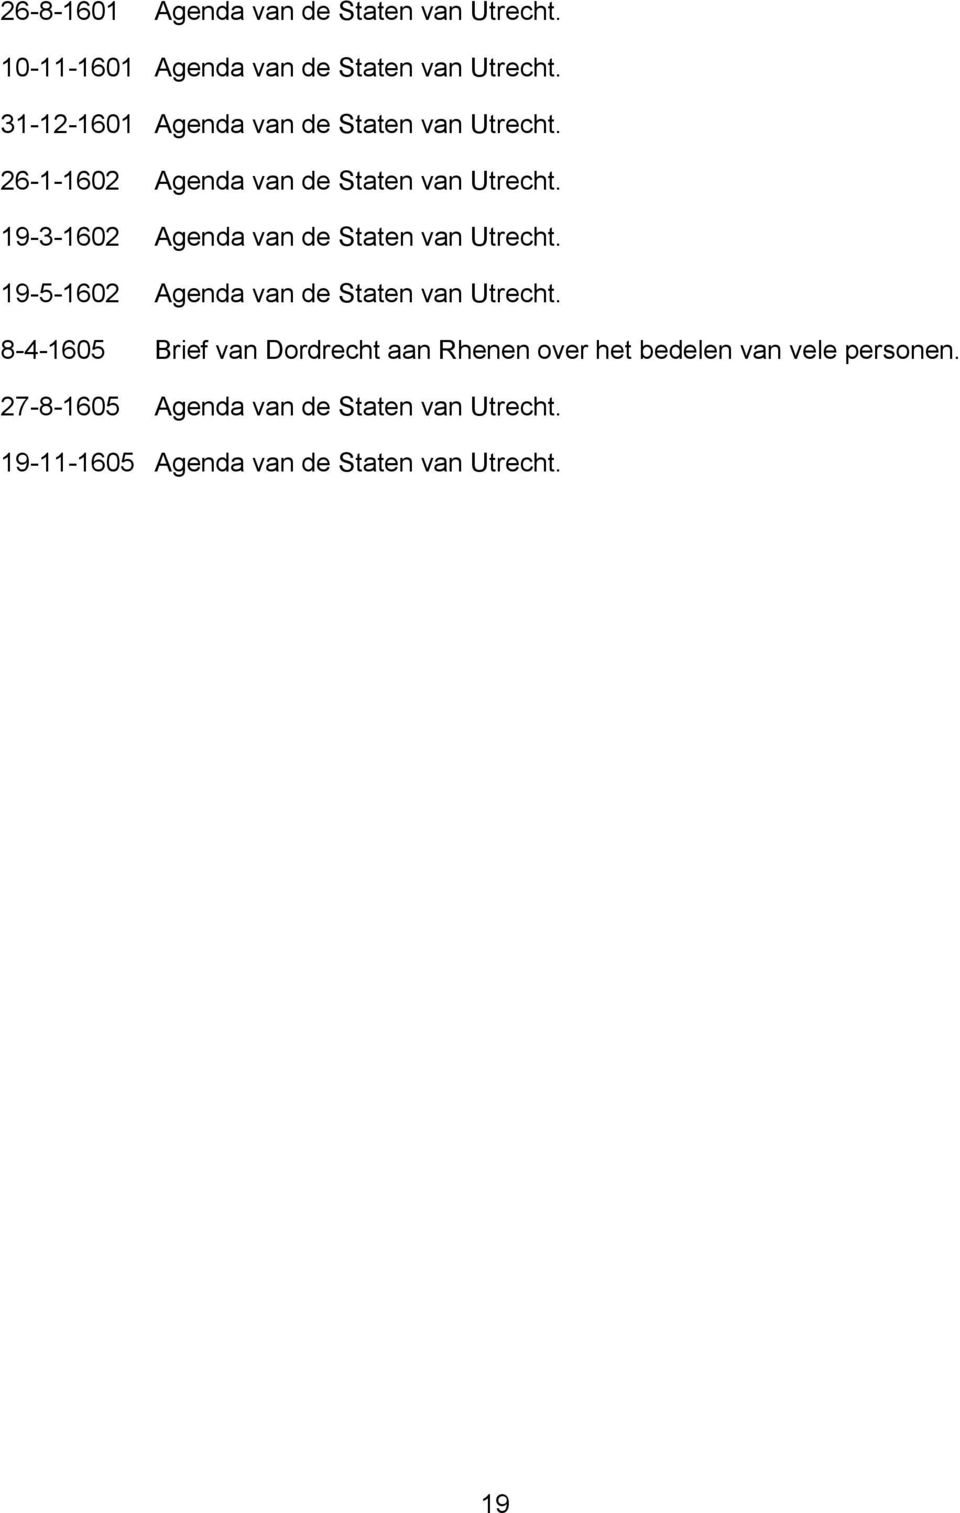 19-3-1602 Agenda van de Staten van Utrecht. 19-5-1602 Agenda van de Staten van Utrecht.